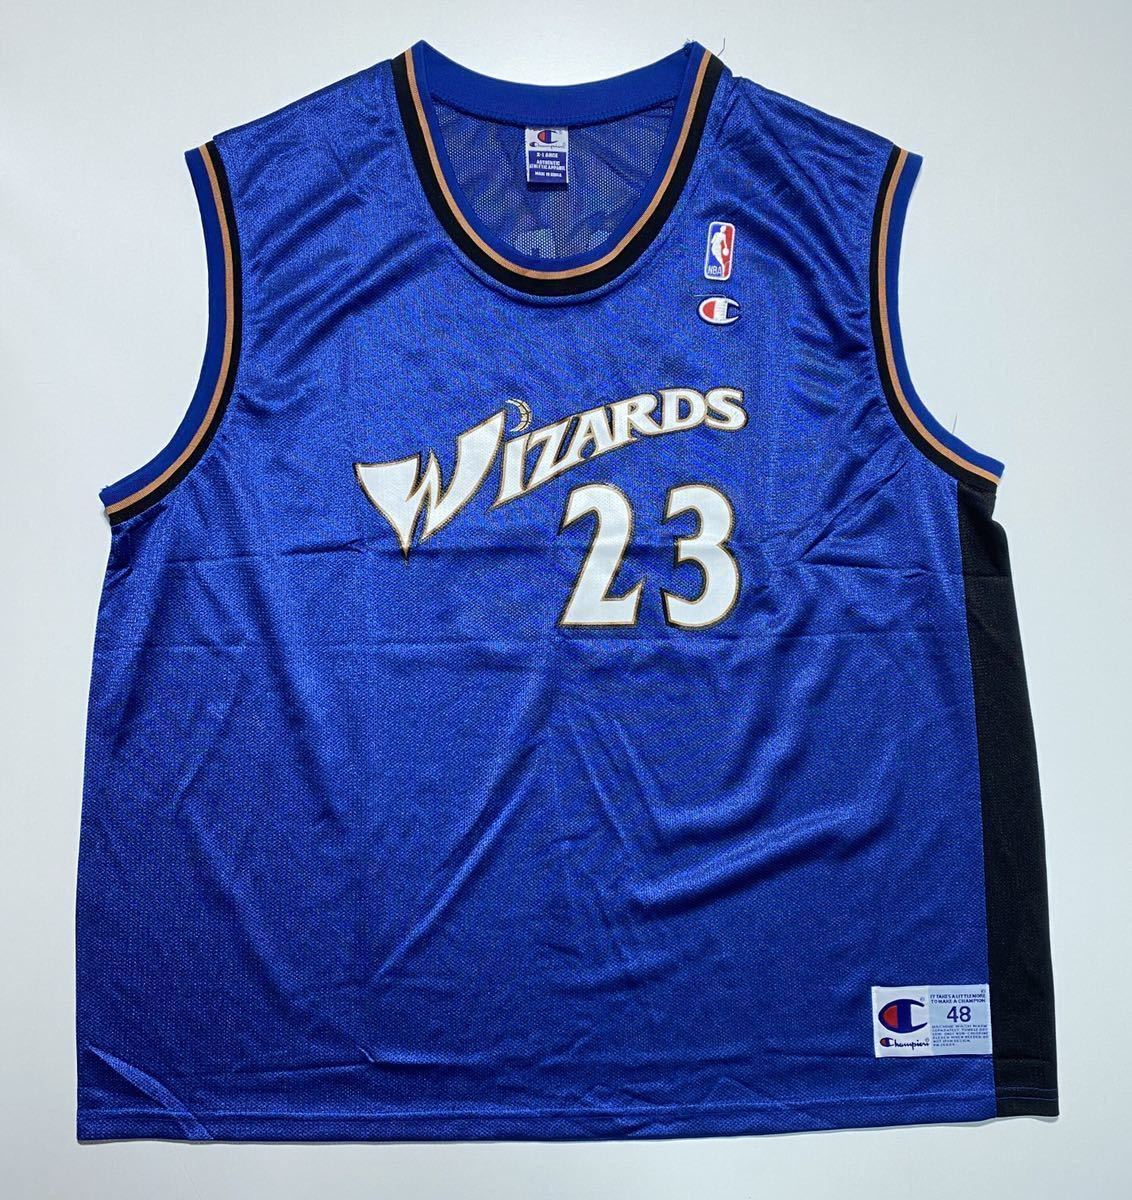 【XL】新品 Champion NBA WIZARDS 23 JORDAN Uniform チャンピオン nba ワシントンウィザーズ マイケルジョーダン ユニフォーム G432